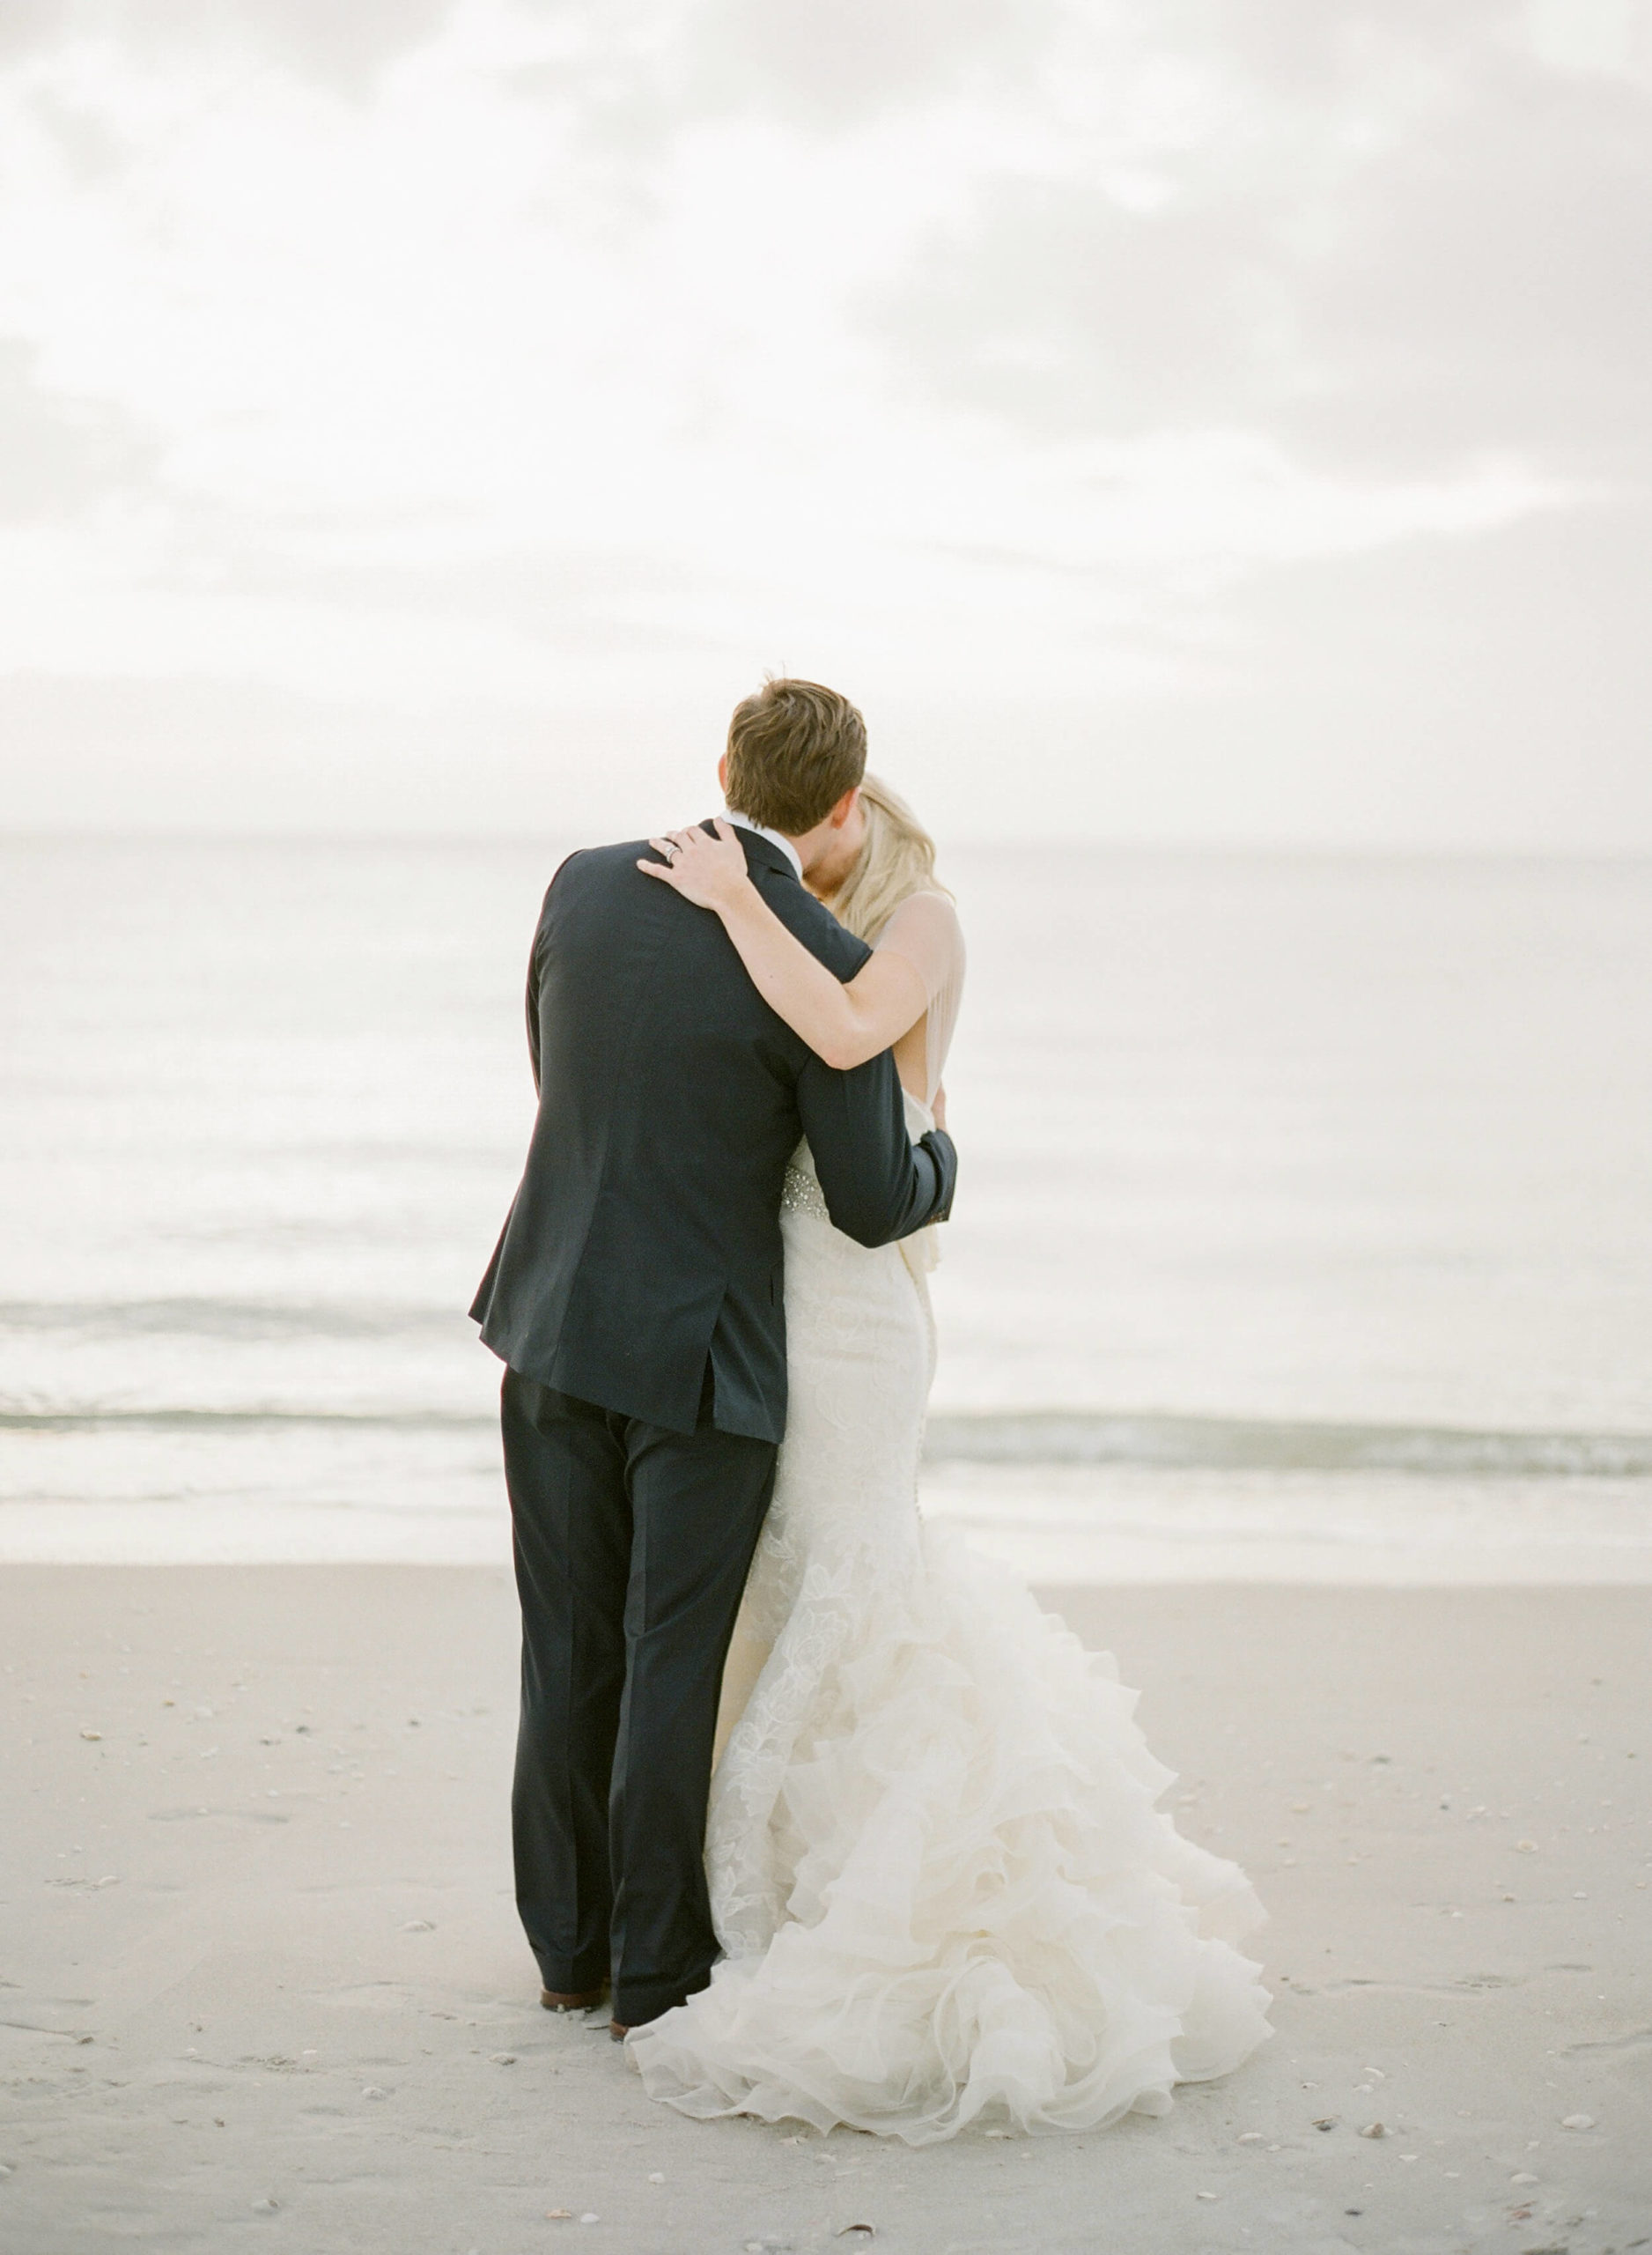 hiring a bridal stylist creates great wedding photos of beach wedding